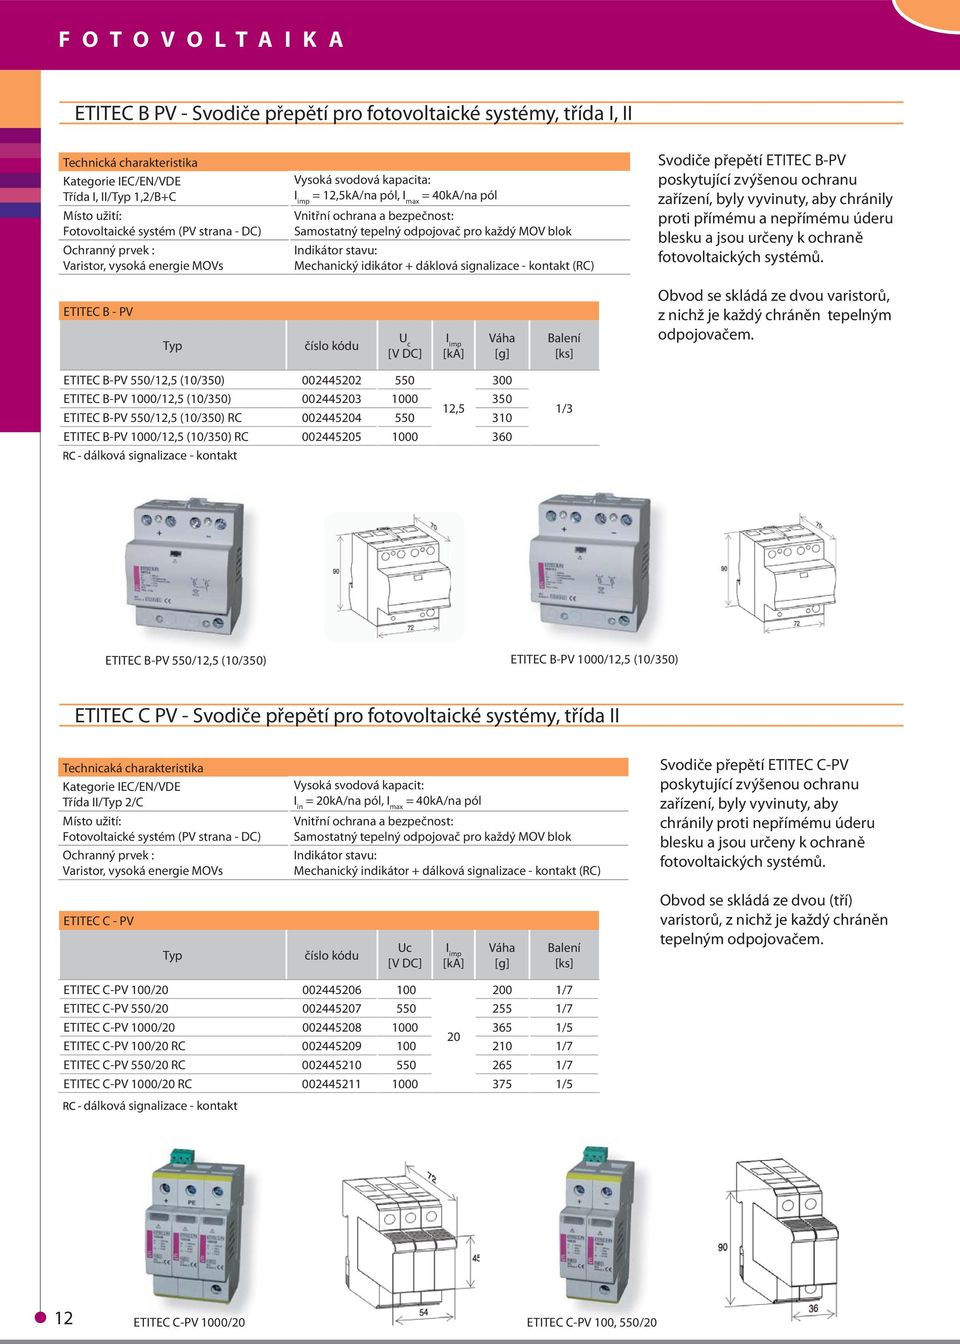 MOV blok Indikátor stavu: Mechanický idikátor + dáklová signalizace - kontakt (RC) Svodiče přepětí ETITEC B-PV poskytující zvýšenou ochranu zařízení, byly vyvinuty, aby chránily proti přímému a